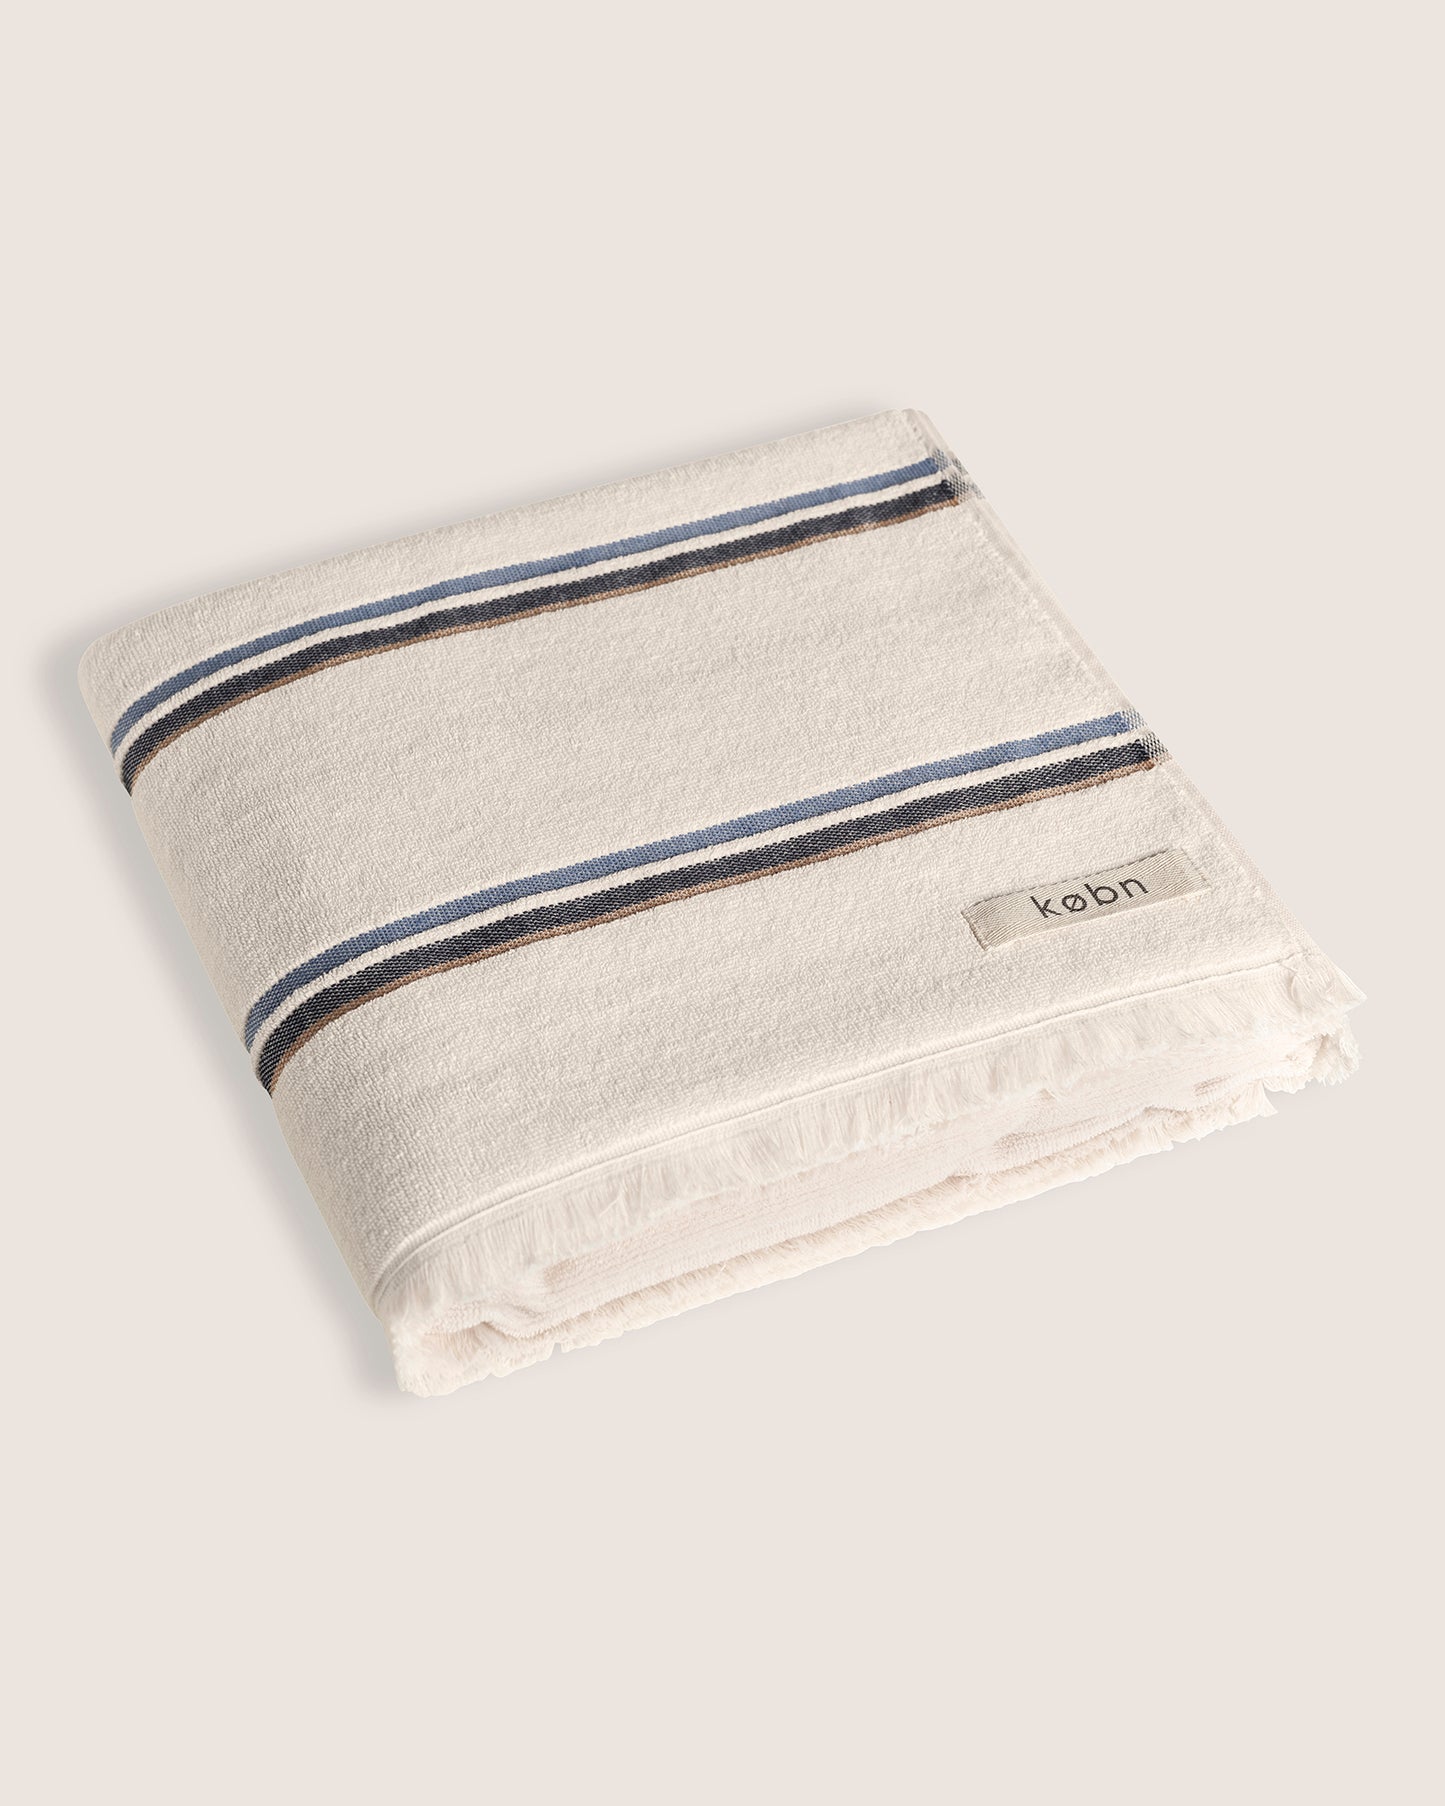 Købn Ecru Towel - PRE-ORDER